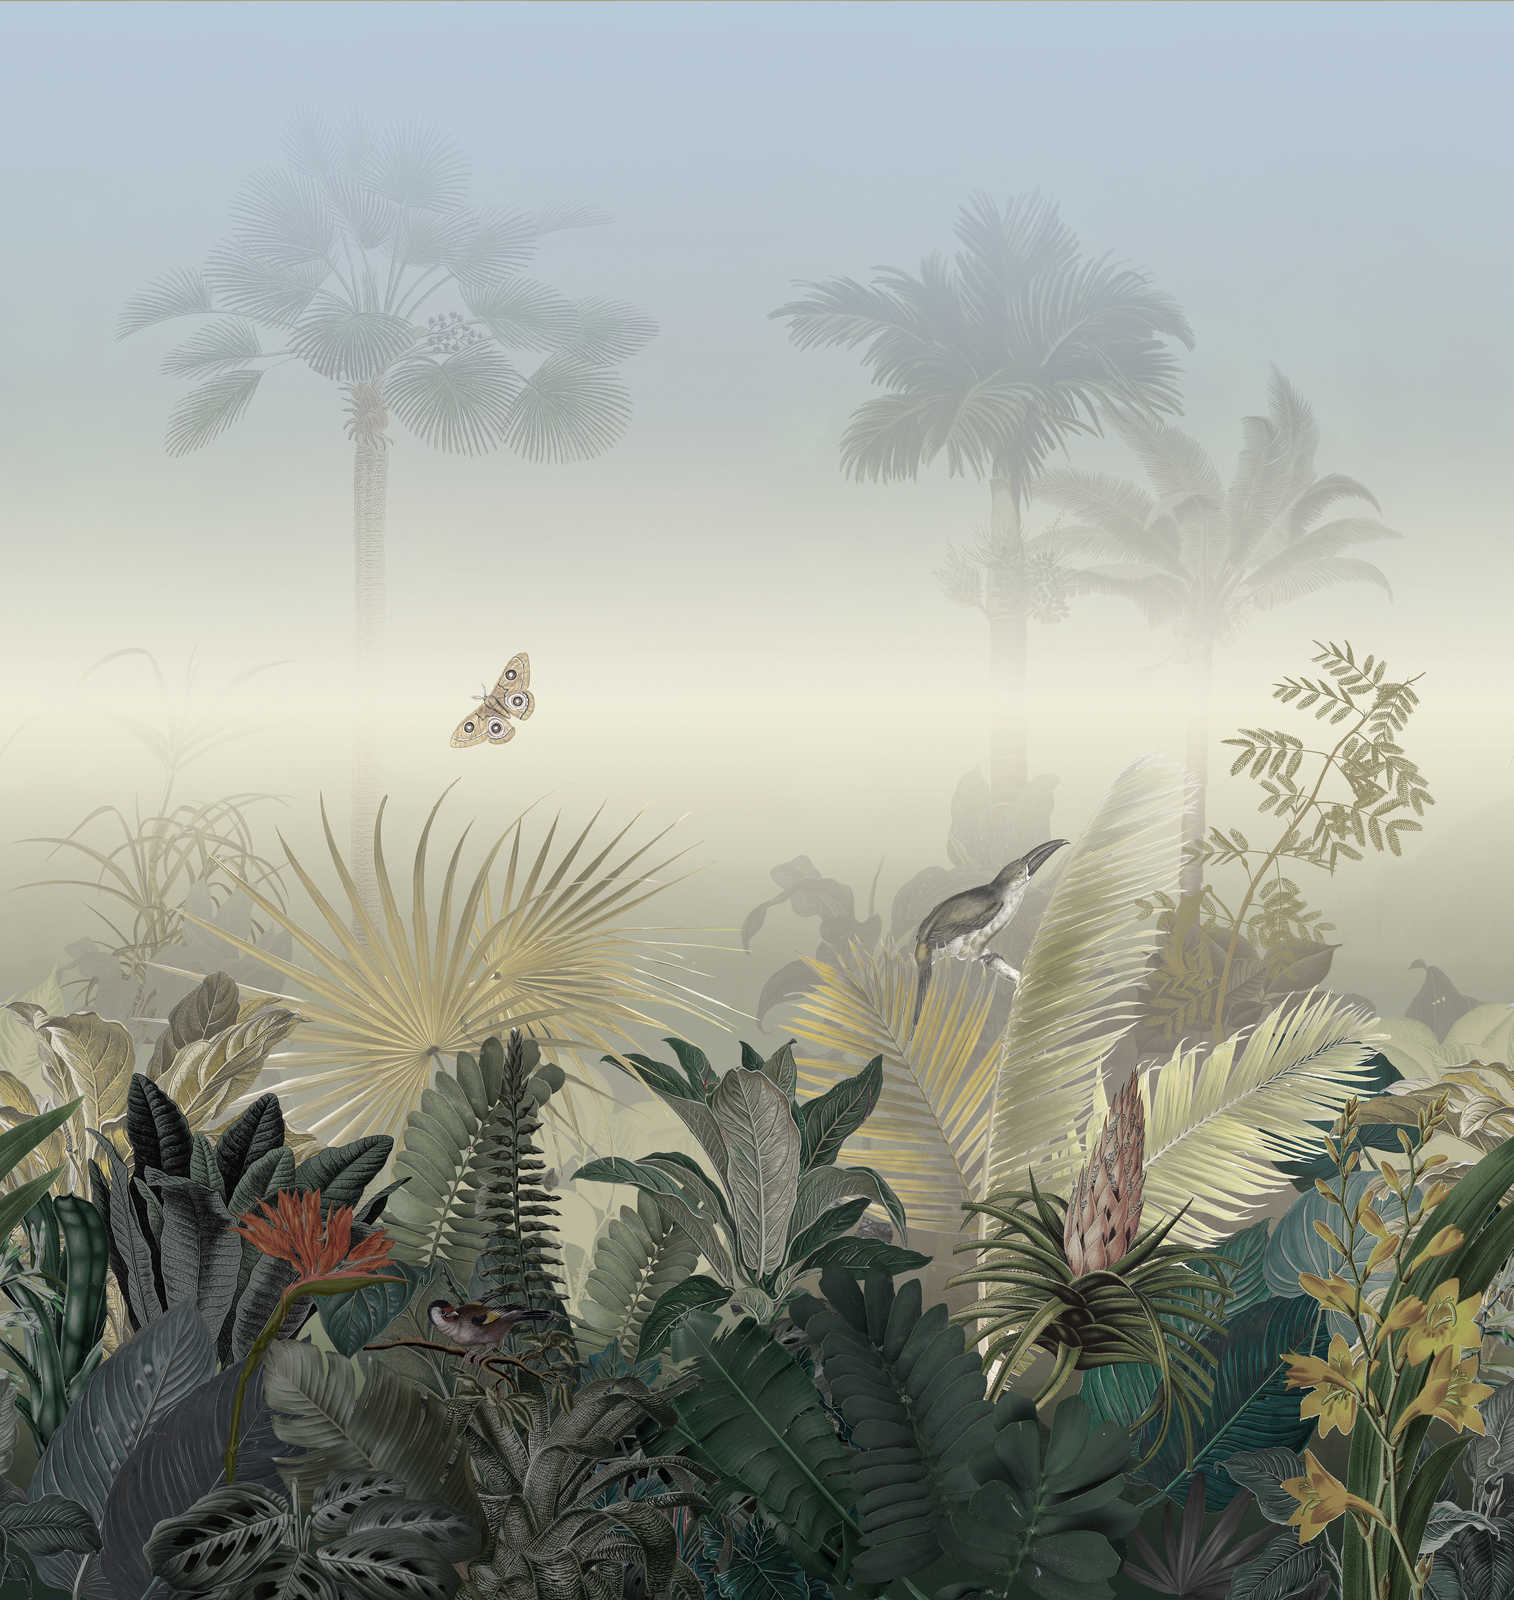             Papier peint motif jungle avec animaux dans le brouillard - multicolore, bleu, vert
        